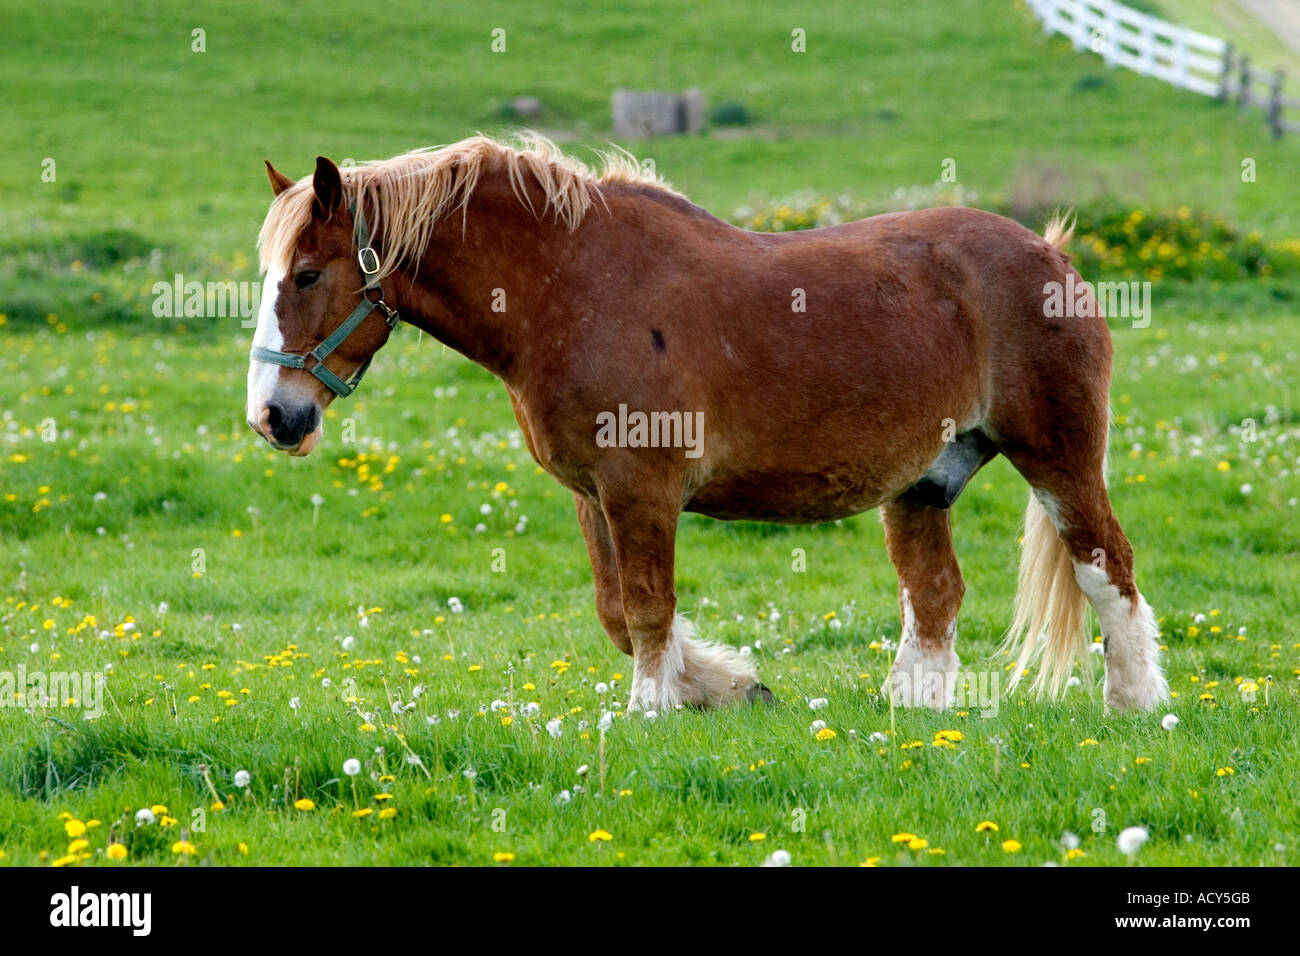 A farm scene with horses near Berlin, Ohio. Stock Photo